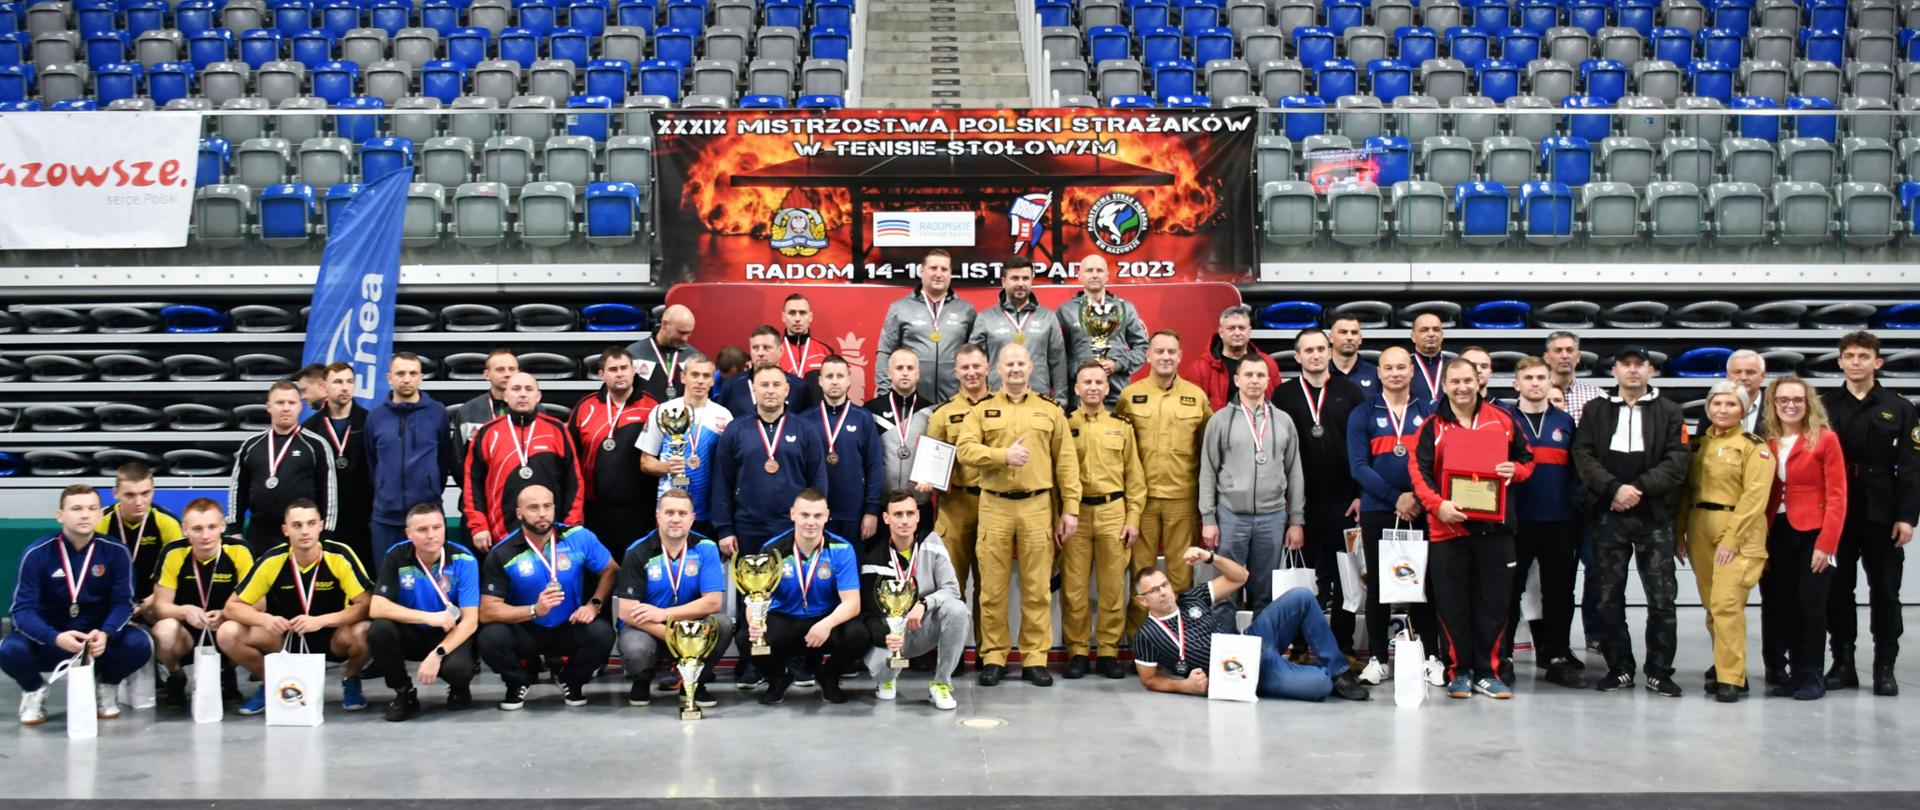 Podsumowanie XXXIX Mistrzostw Polski Strażaków w Tenisie Stołowym